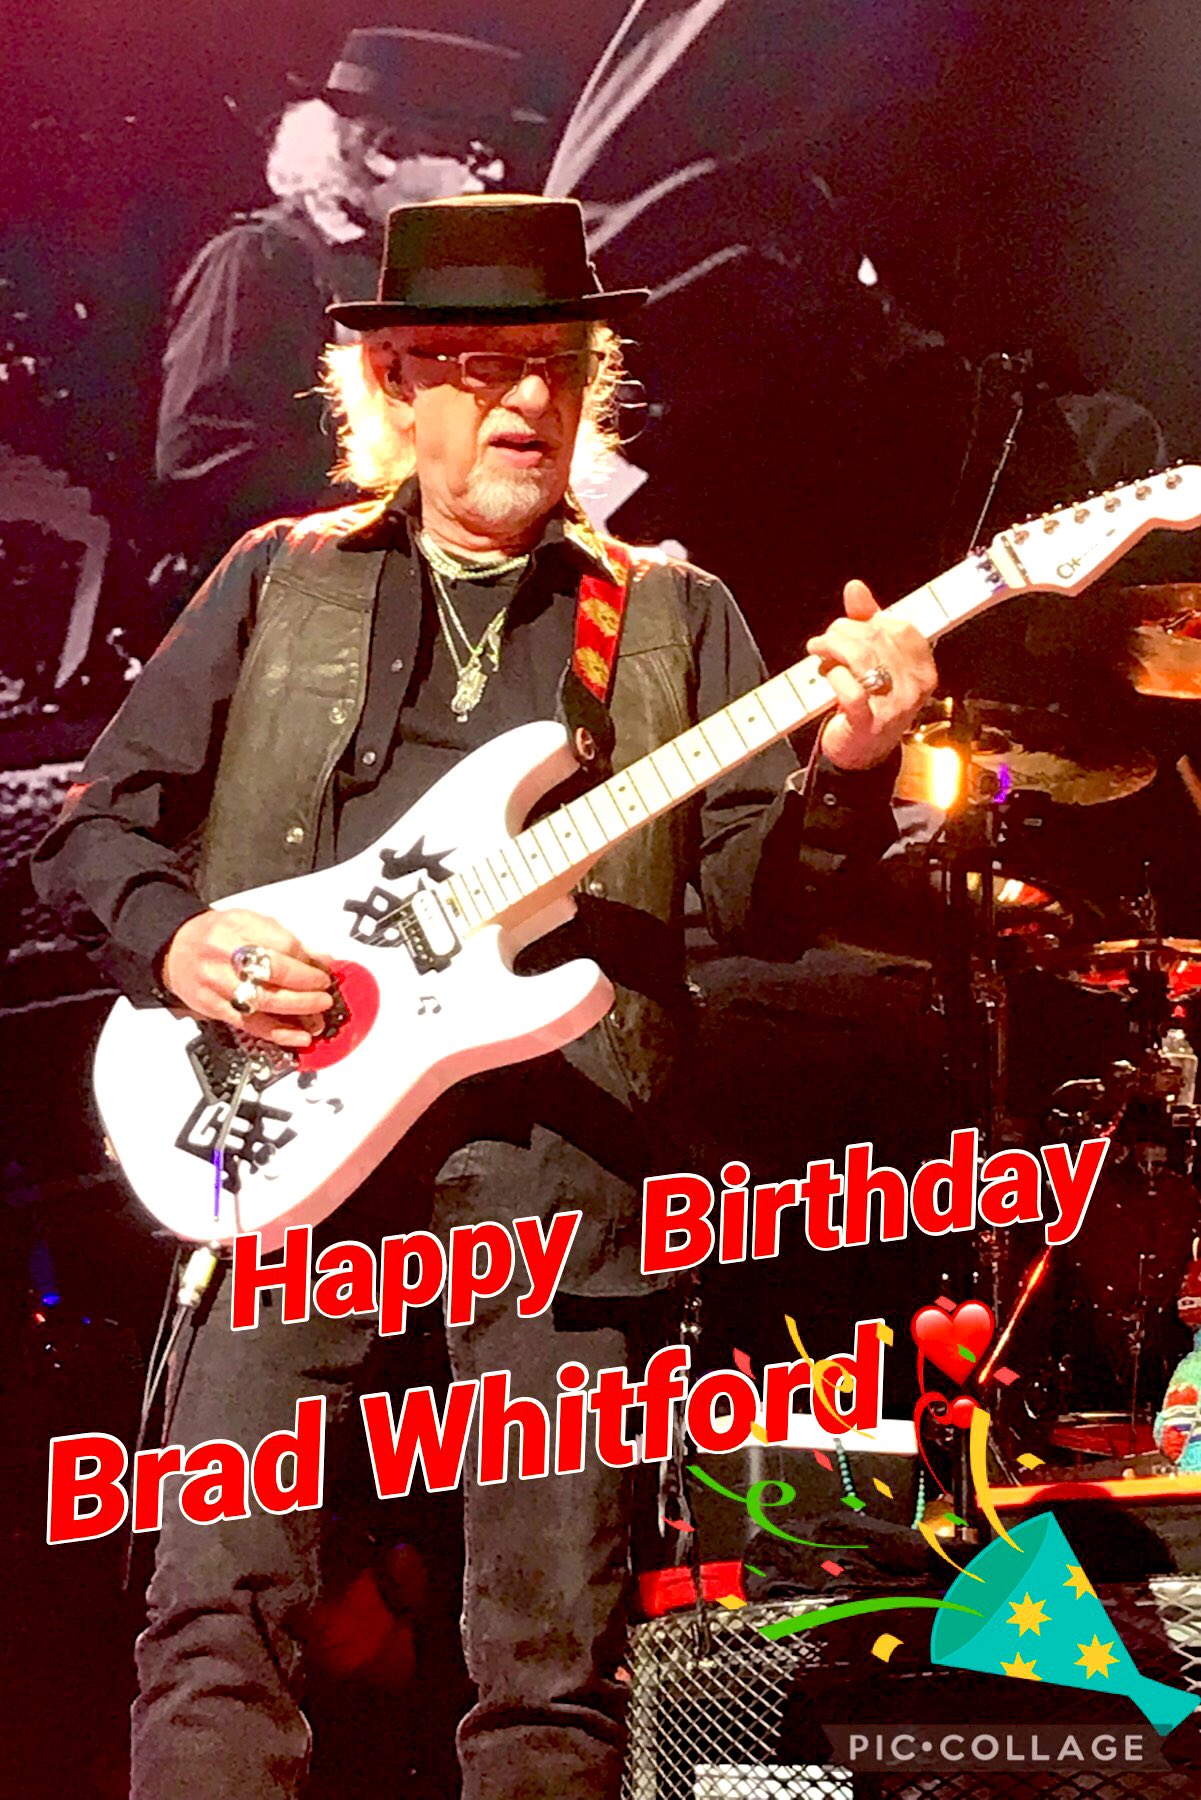  Happy Birthday Brad Whitford  I hope you have a wonderful birthday          